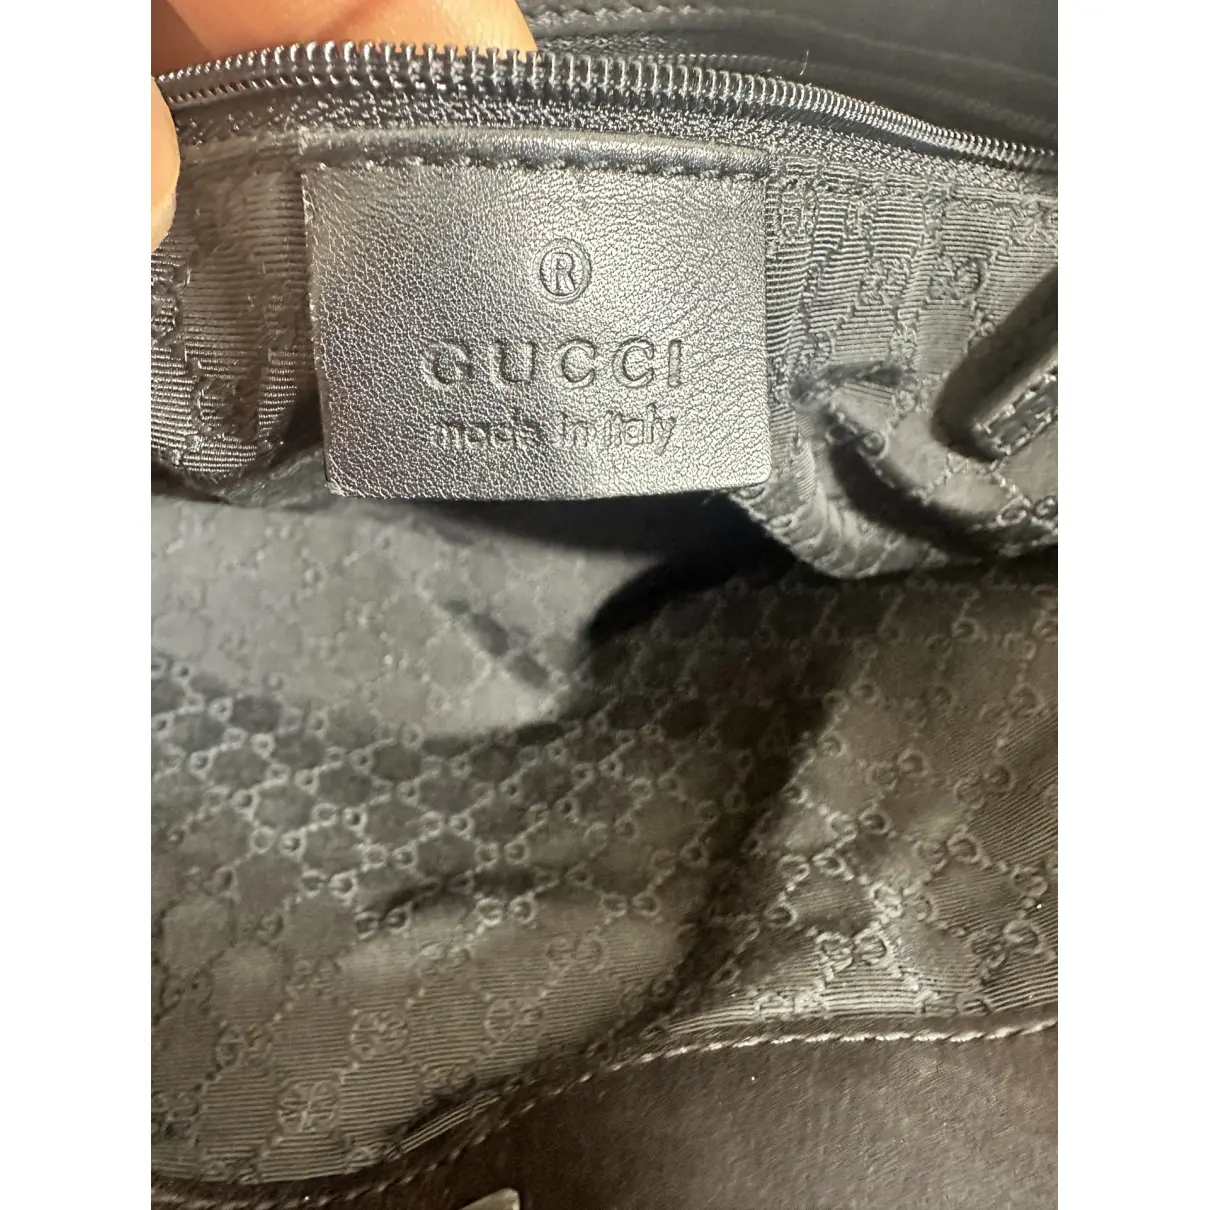 Handbag Gucci